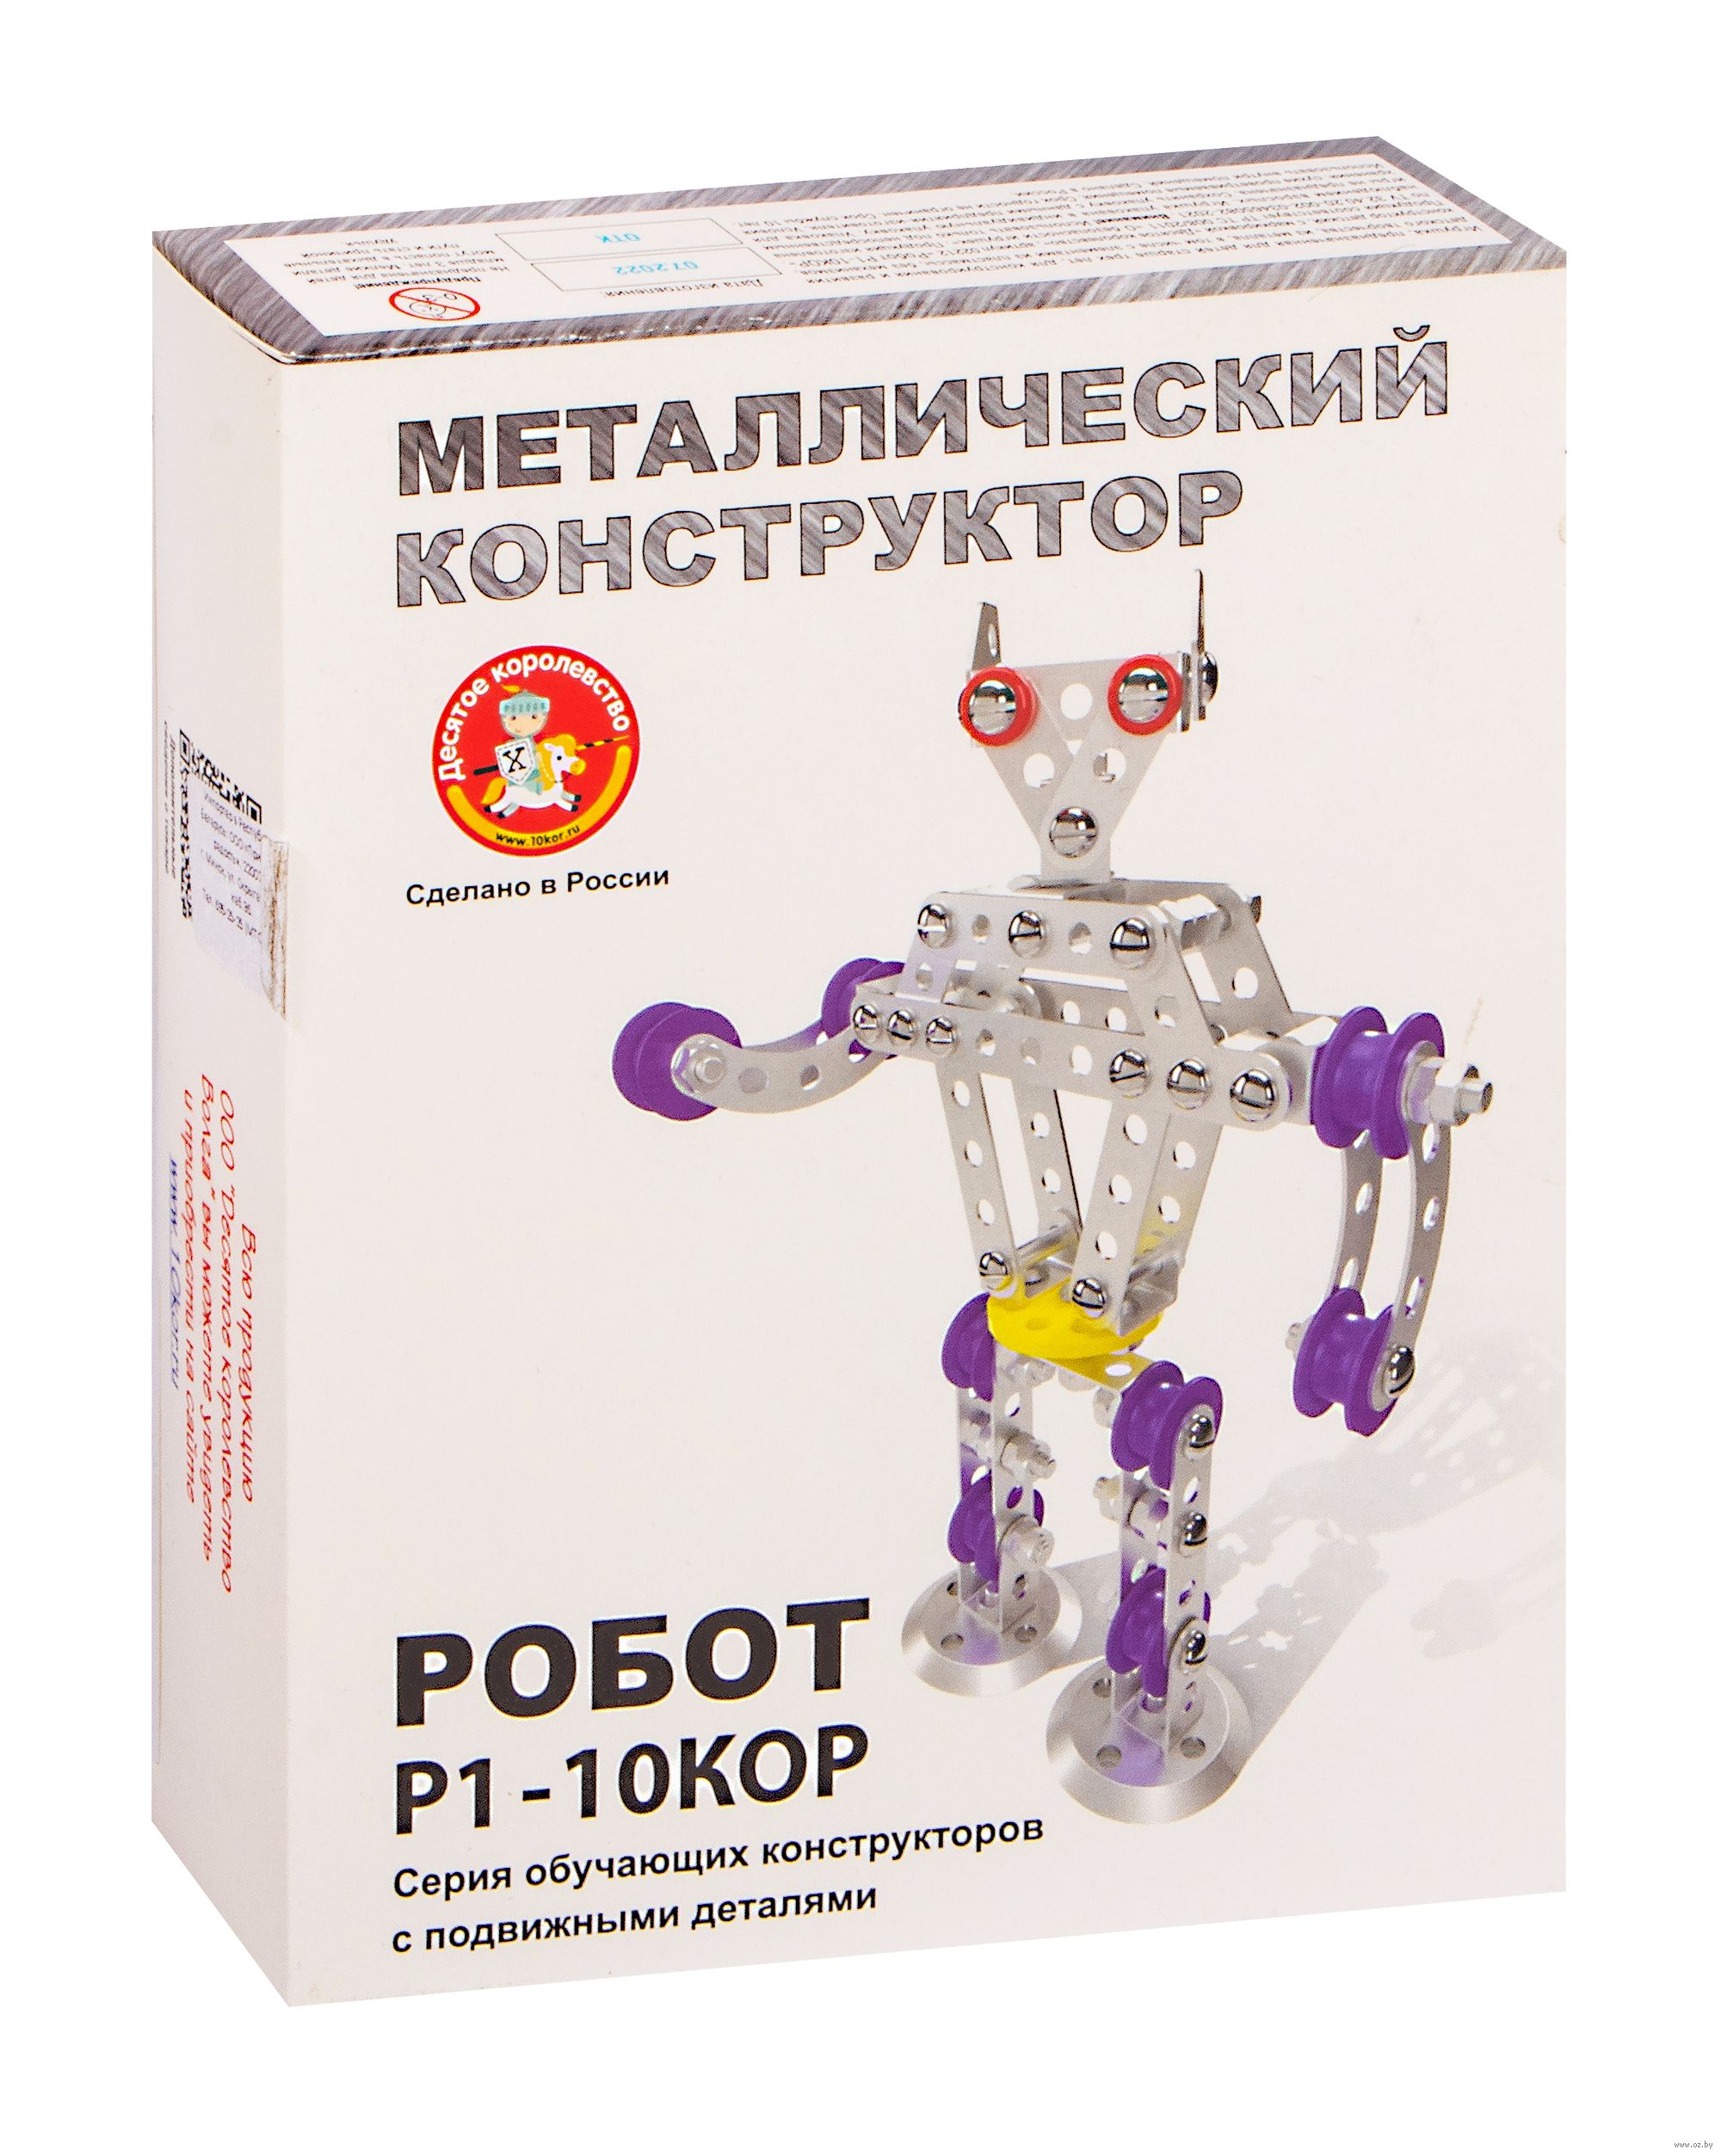 Роботы и робототехнические наборы, совместимые с платформой Arduino